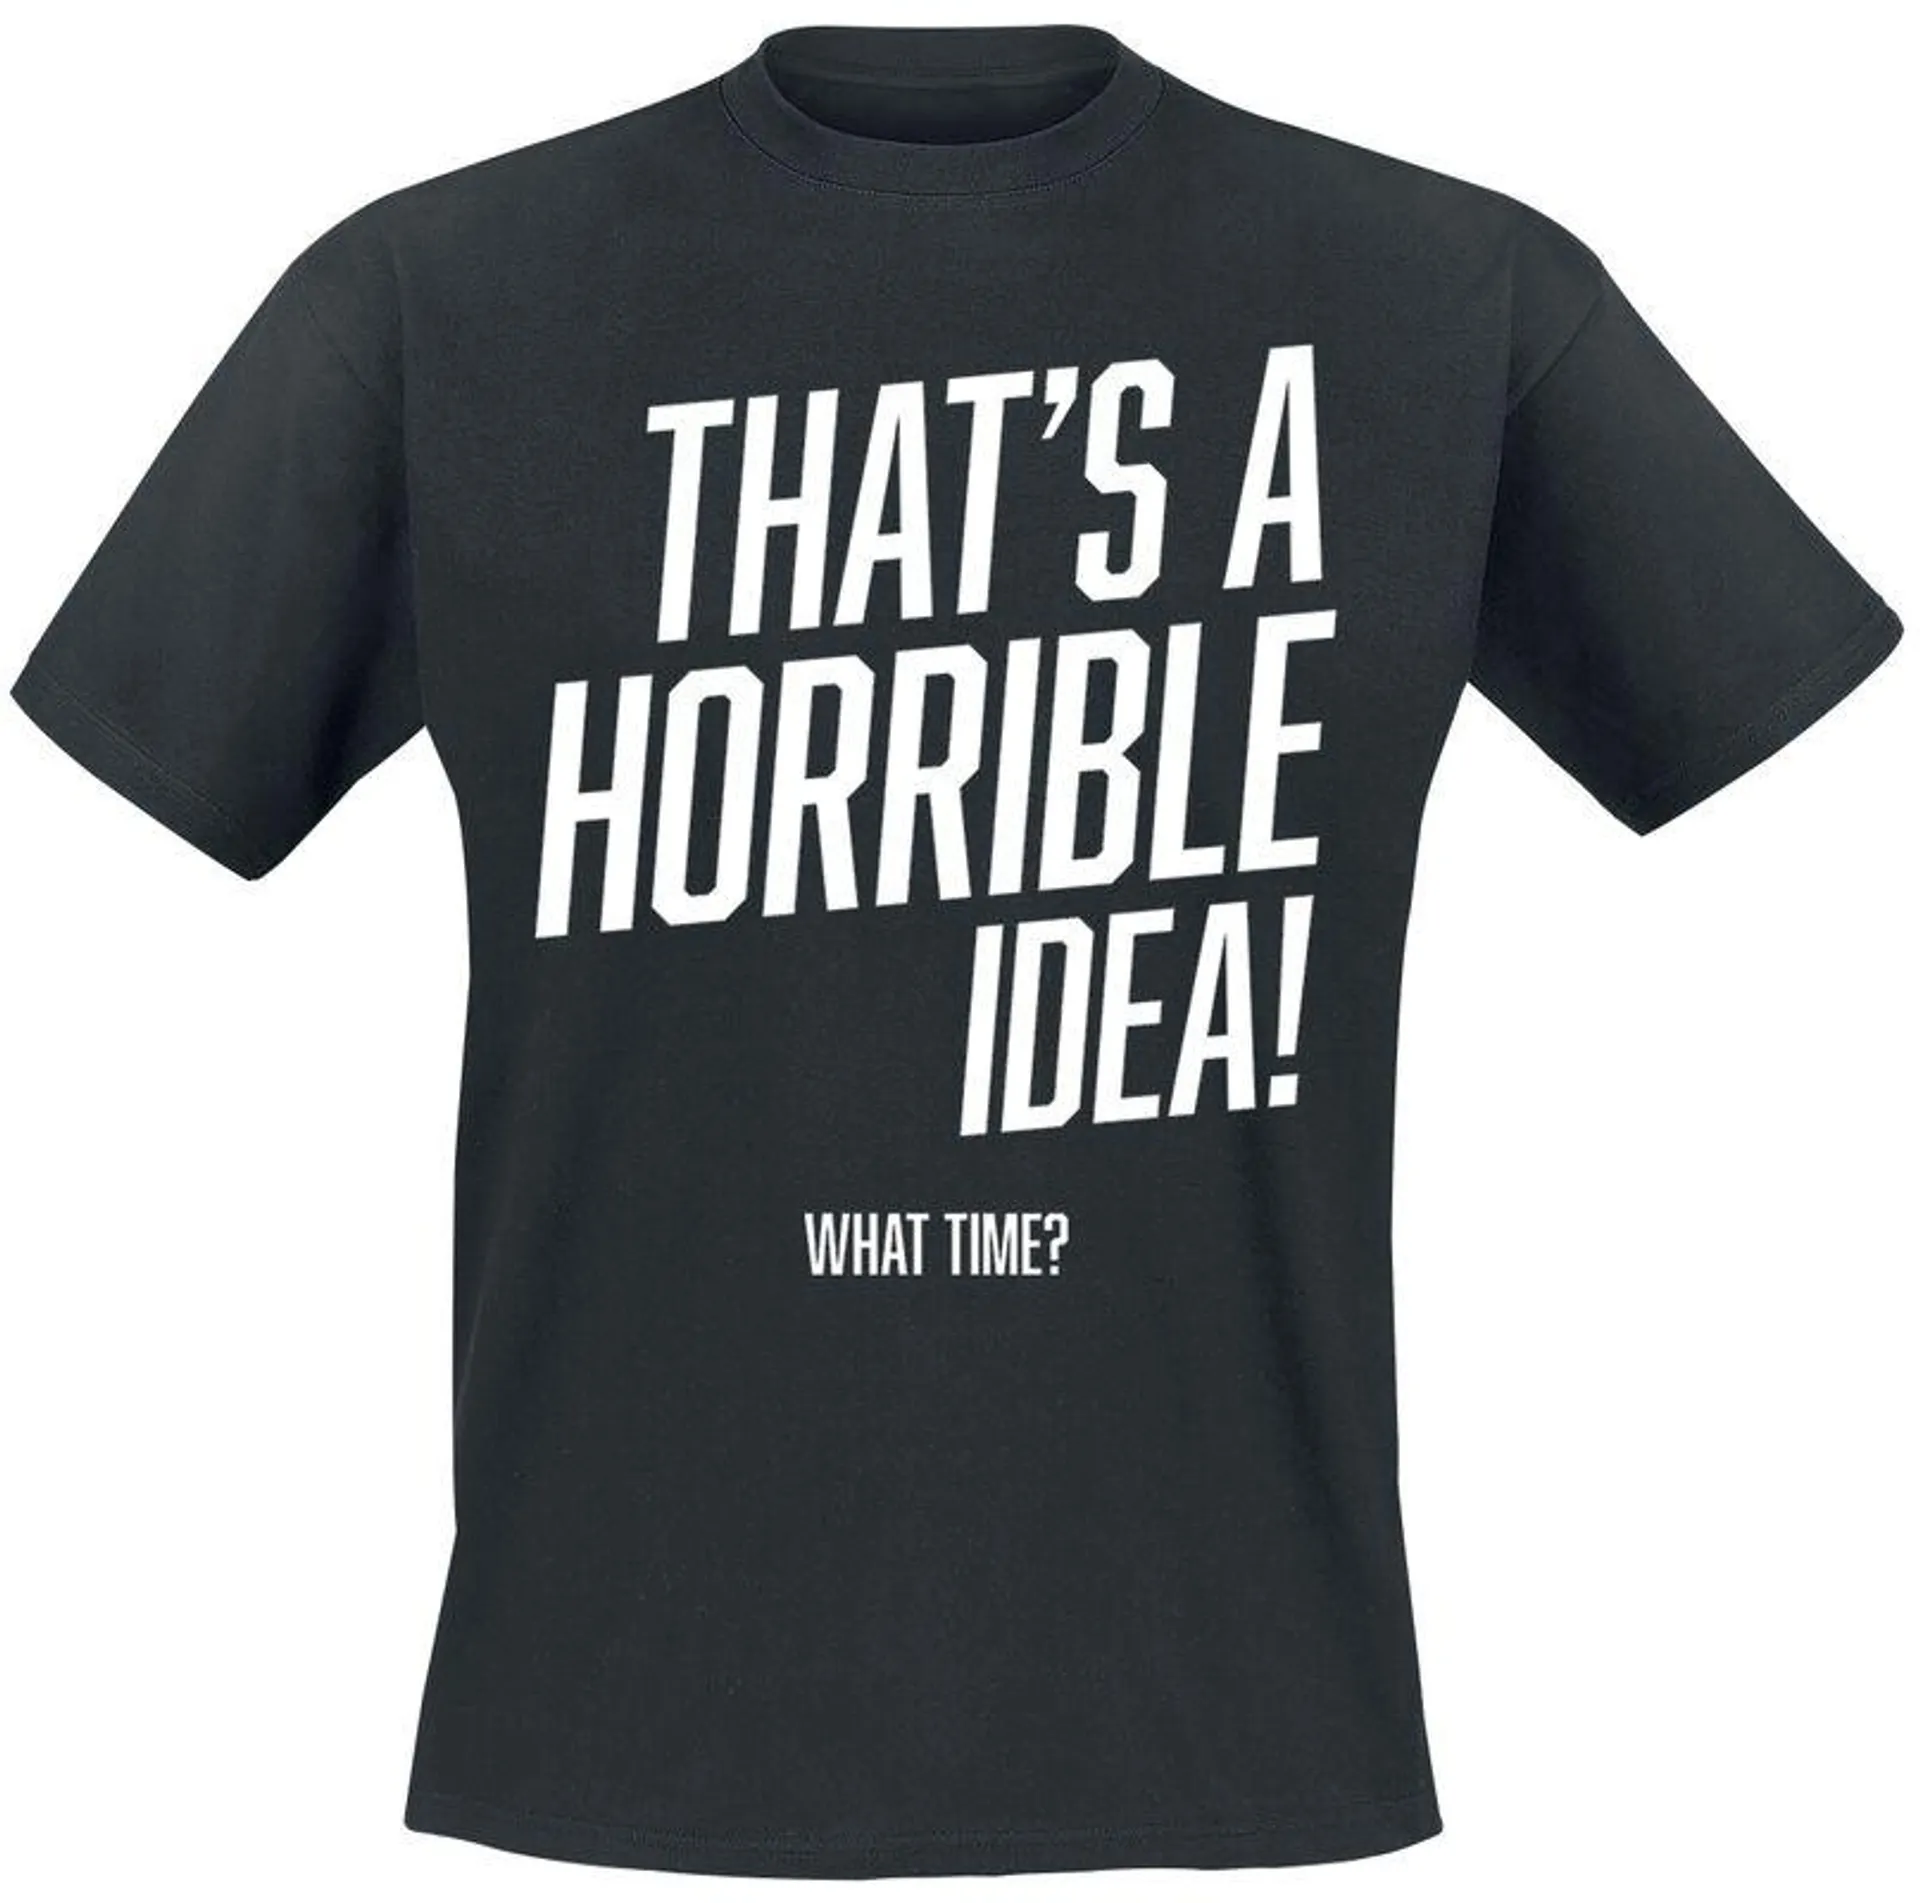 "That’s a horrible idea, what time?" Camiseta Negro de Slogans